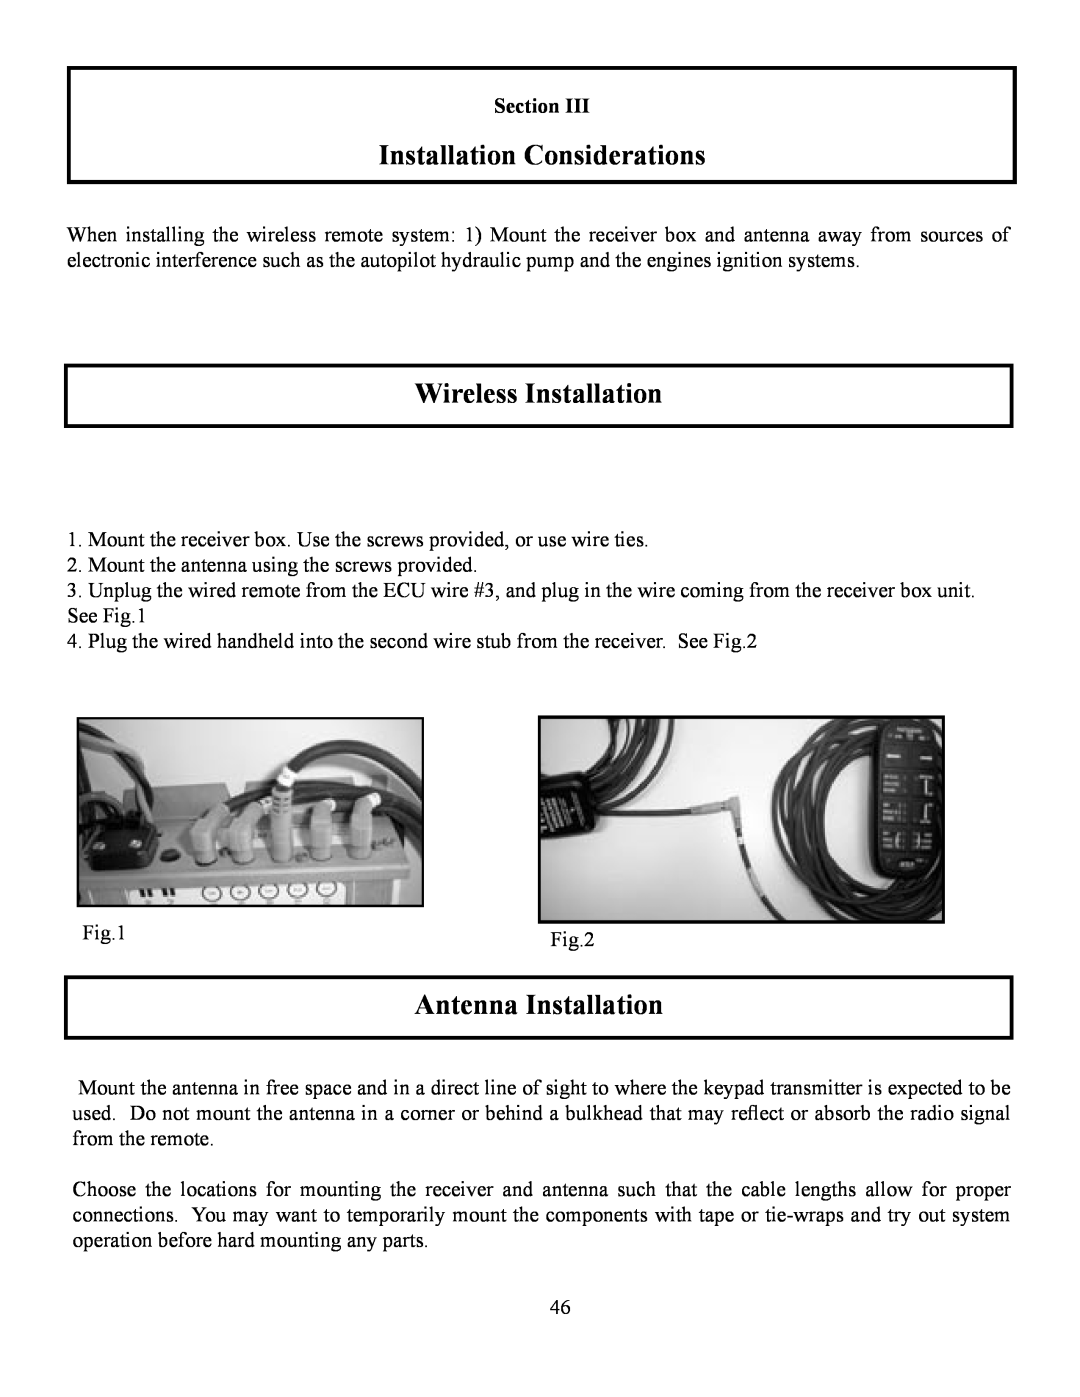 Garmin TR-1 manual Installation Considerations, Wireless Installation, Antenna Installation 